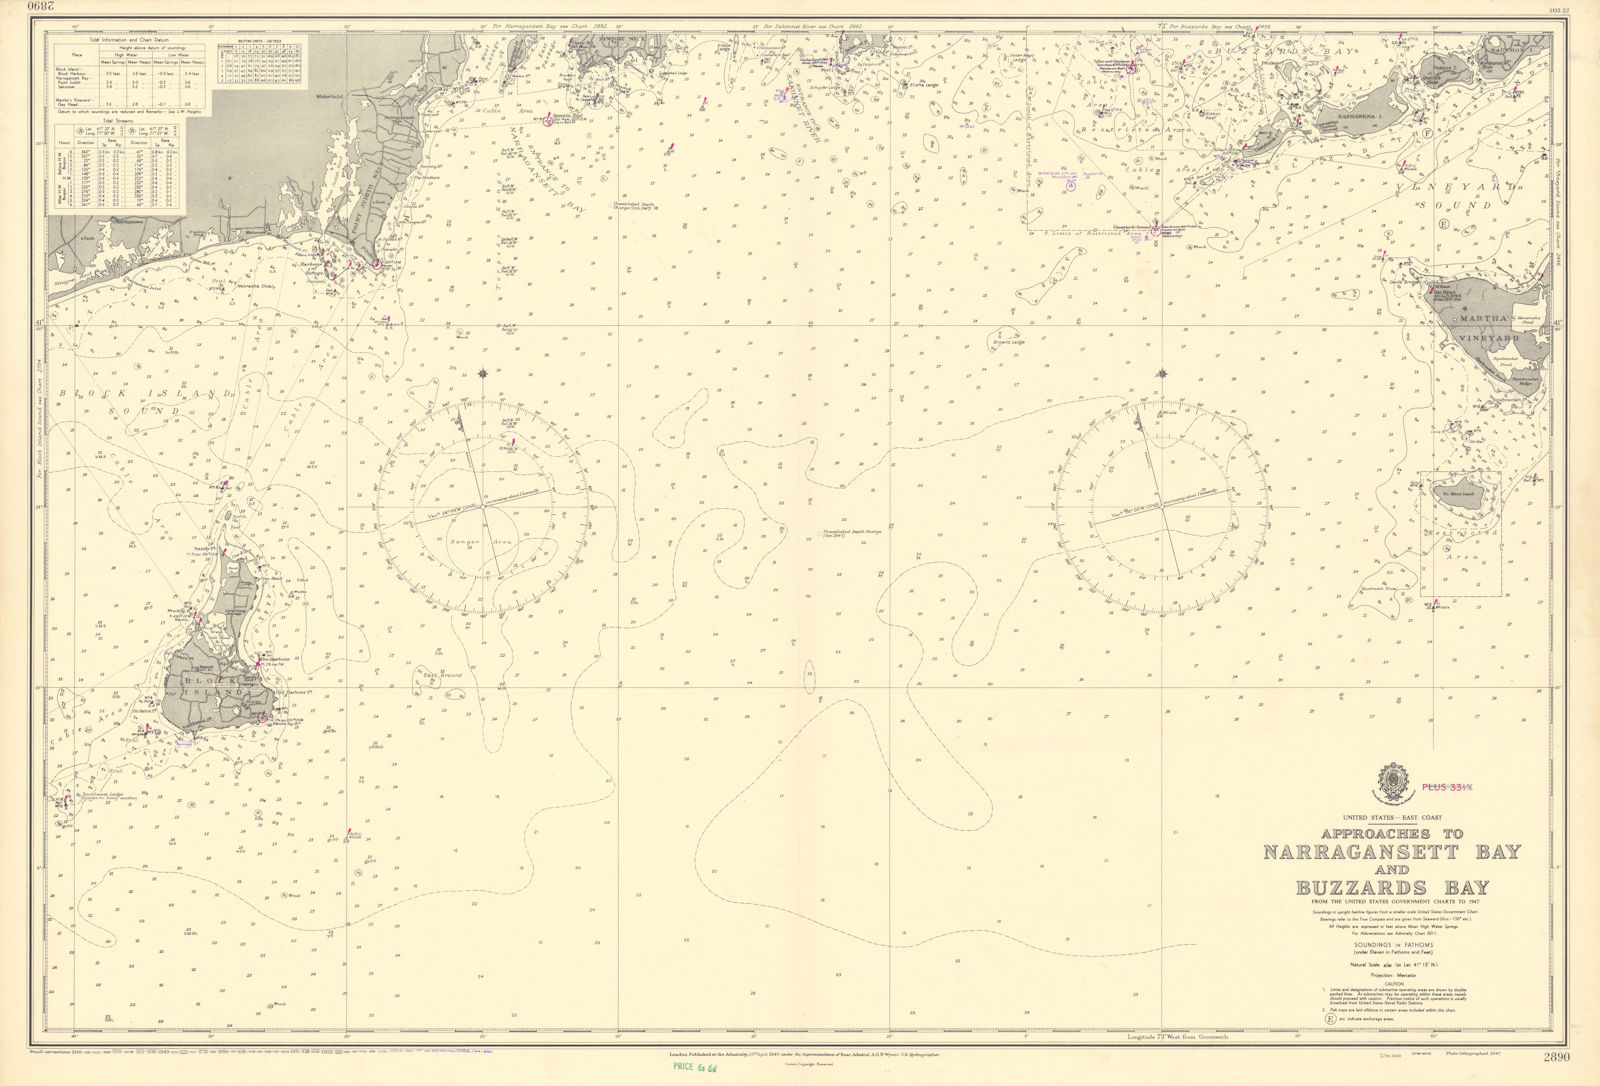 Narragansett Buzzards Bay approach Block Island ADMIRALTY chart 1948 (1956) map